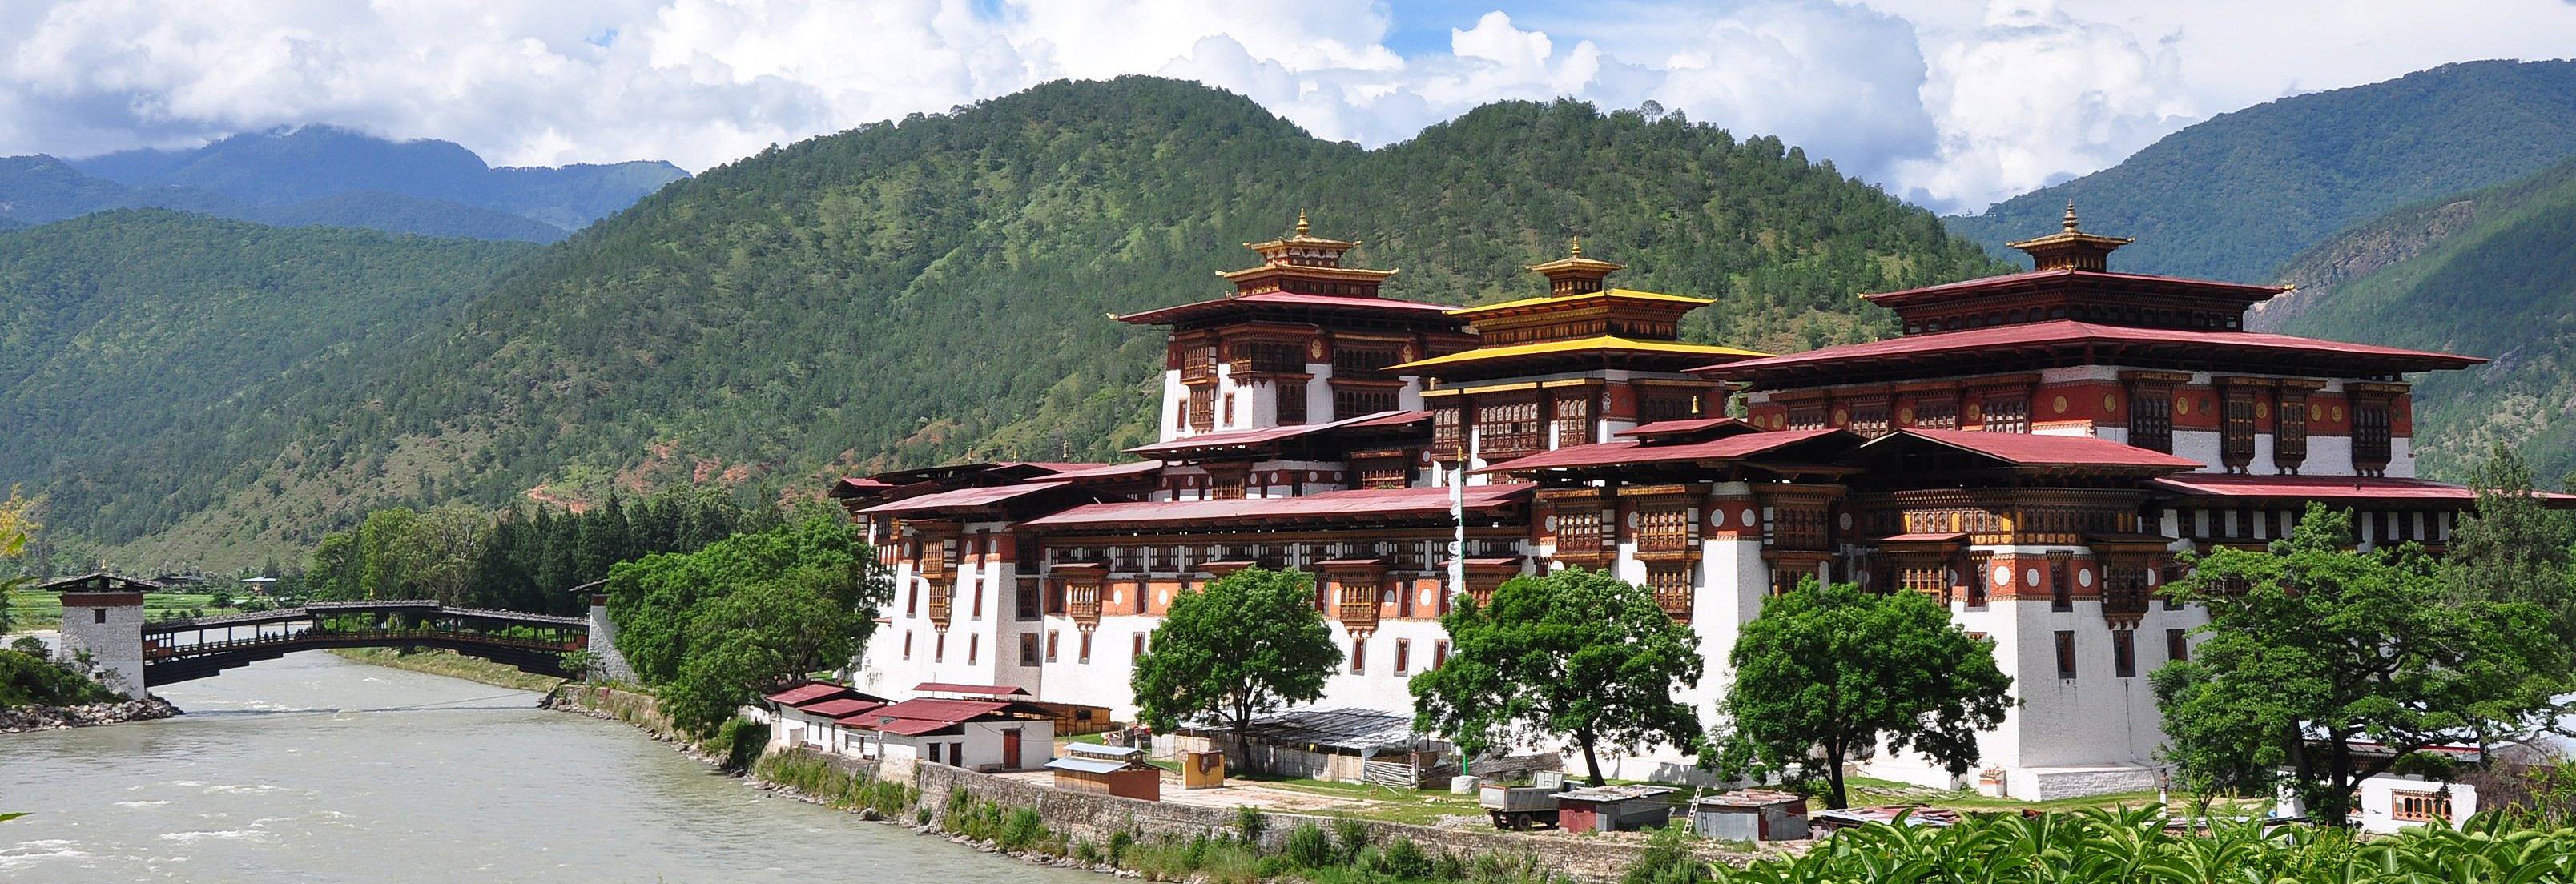 Crea il tuo viaggio in Bhutan in estate, 100% su misura